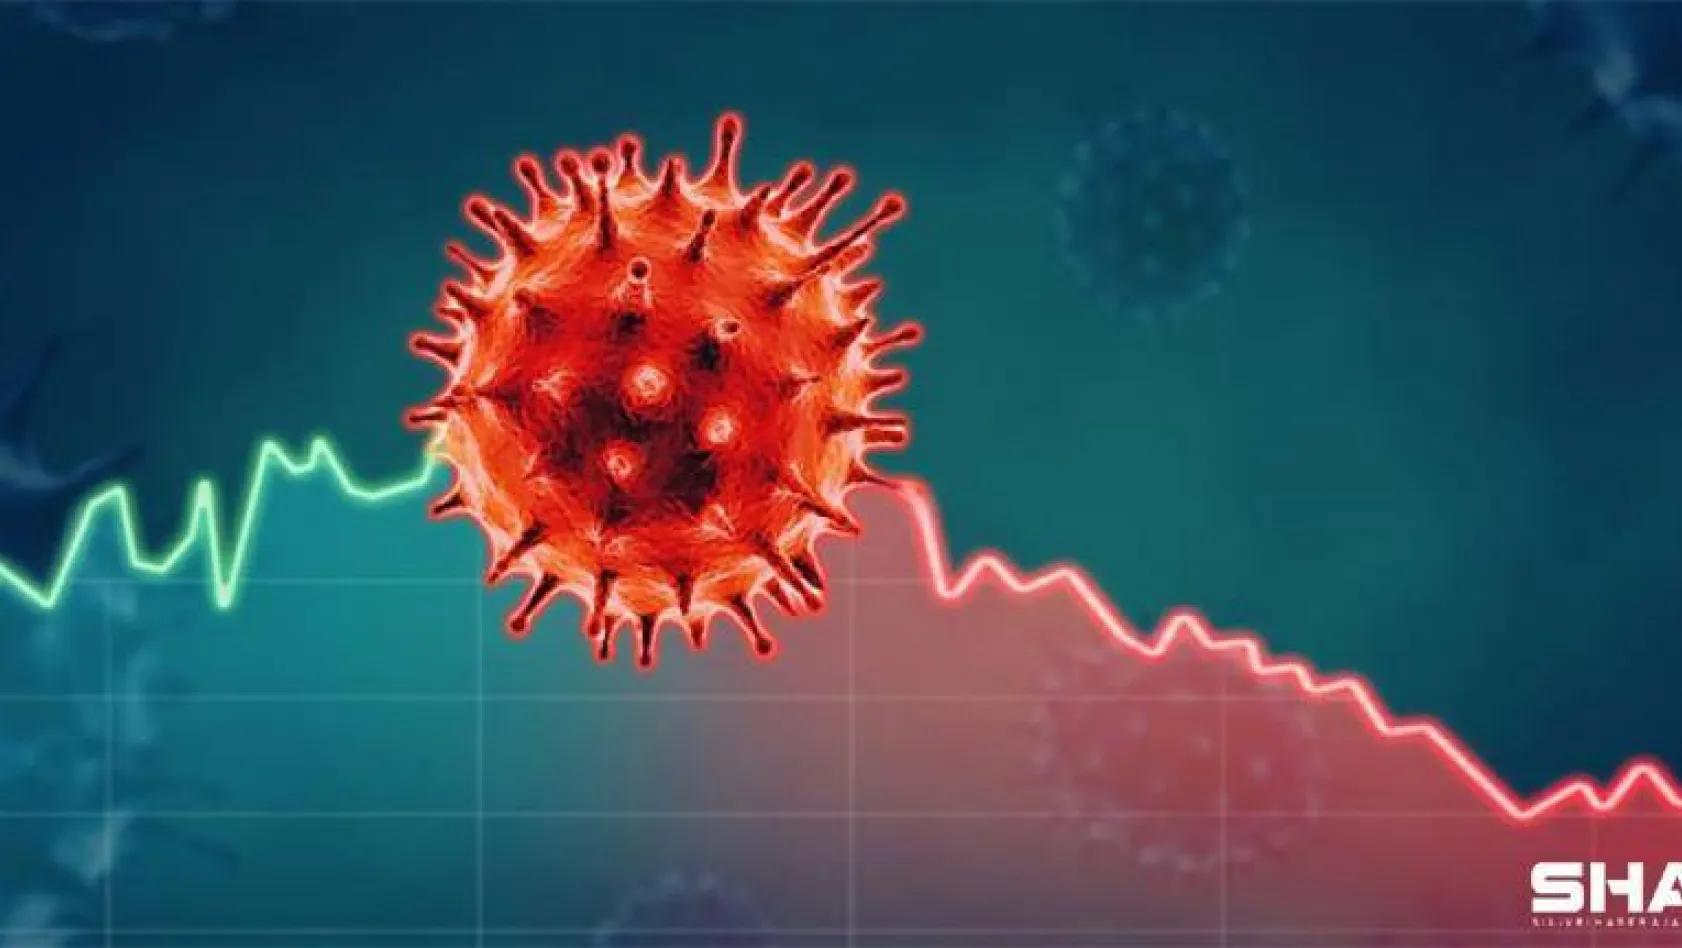 Türkiye'de son 24 saatte 8.636 koronavirüs vakası tespit edildi